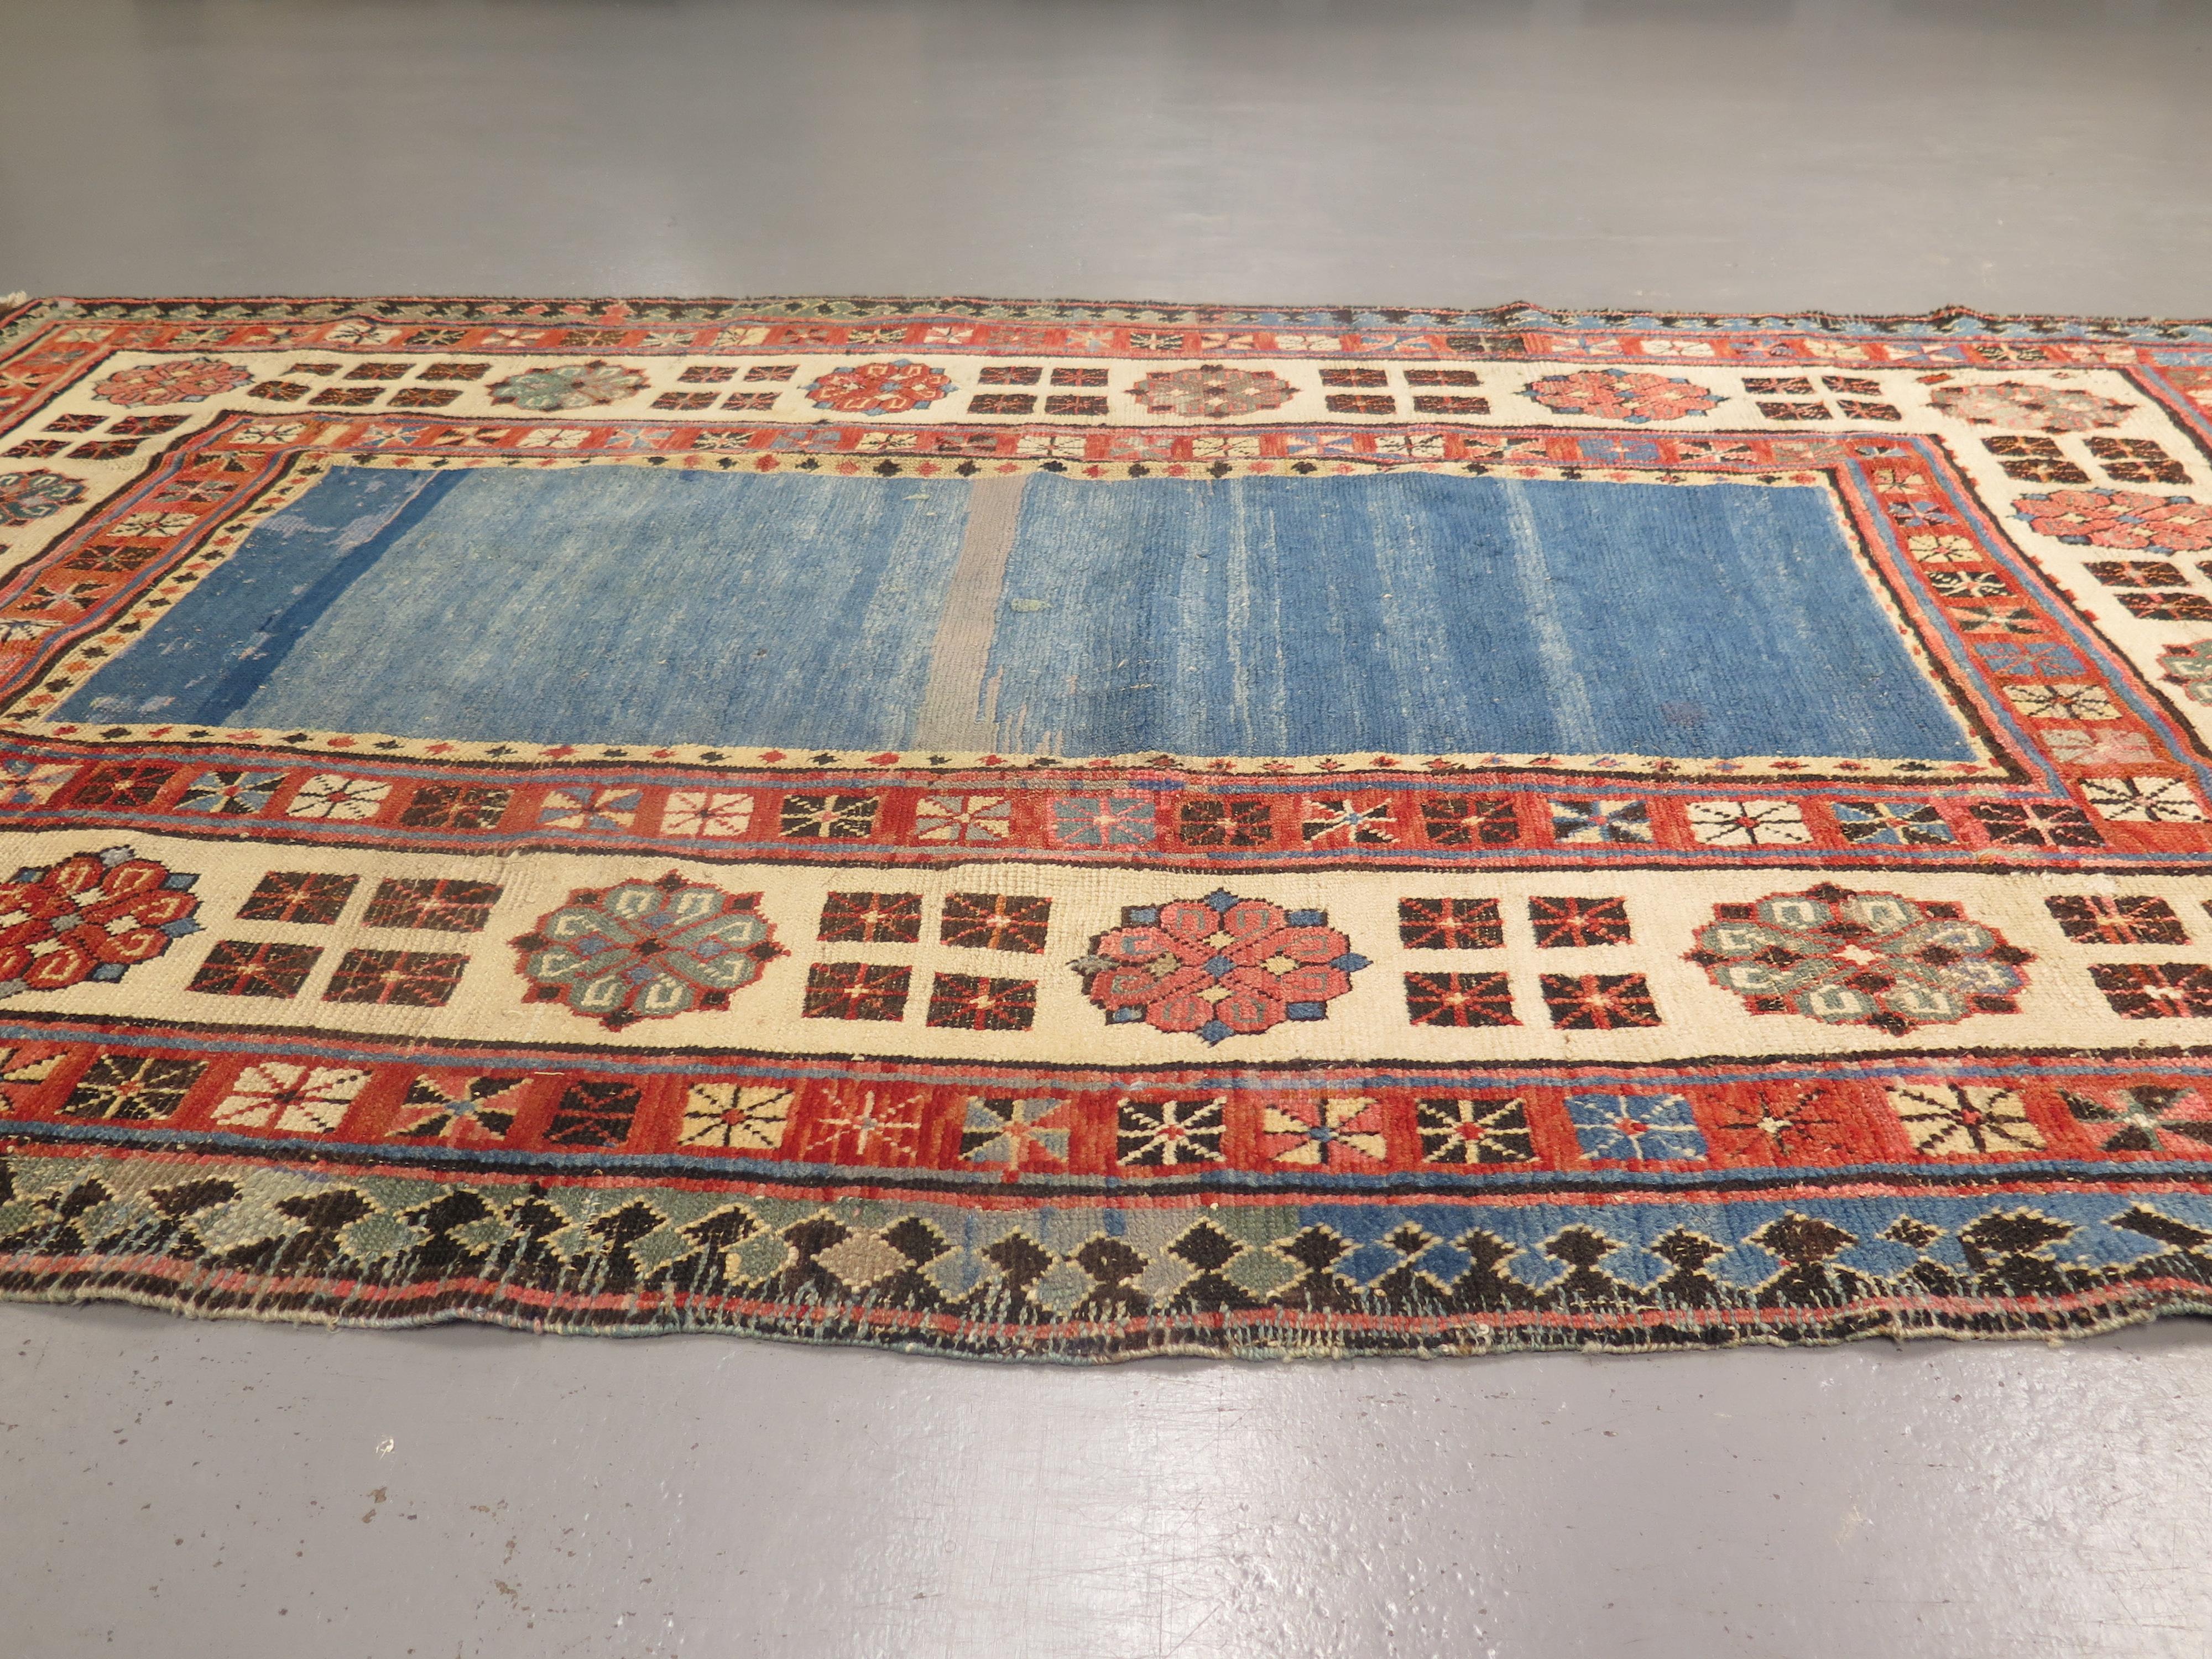 Les tapis anciens de Talish, qui proviennent de l'une des premières régions habitées de l'Azerbaïdjan actuel, sont réputés pour leur dessin unique et leur laine de haute qualité, ainsi que pour leur tendance à utiliser des motifs floraux, plutôt que